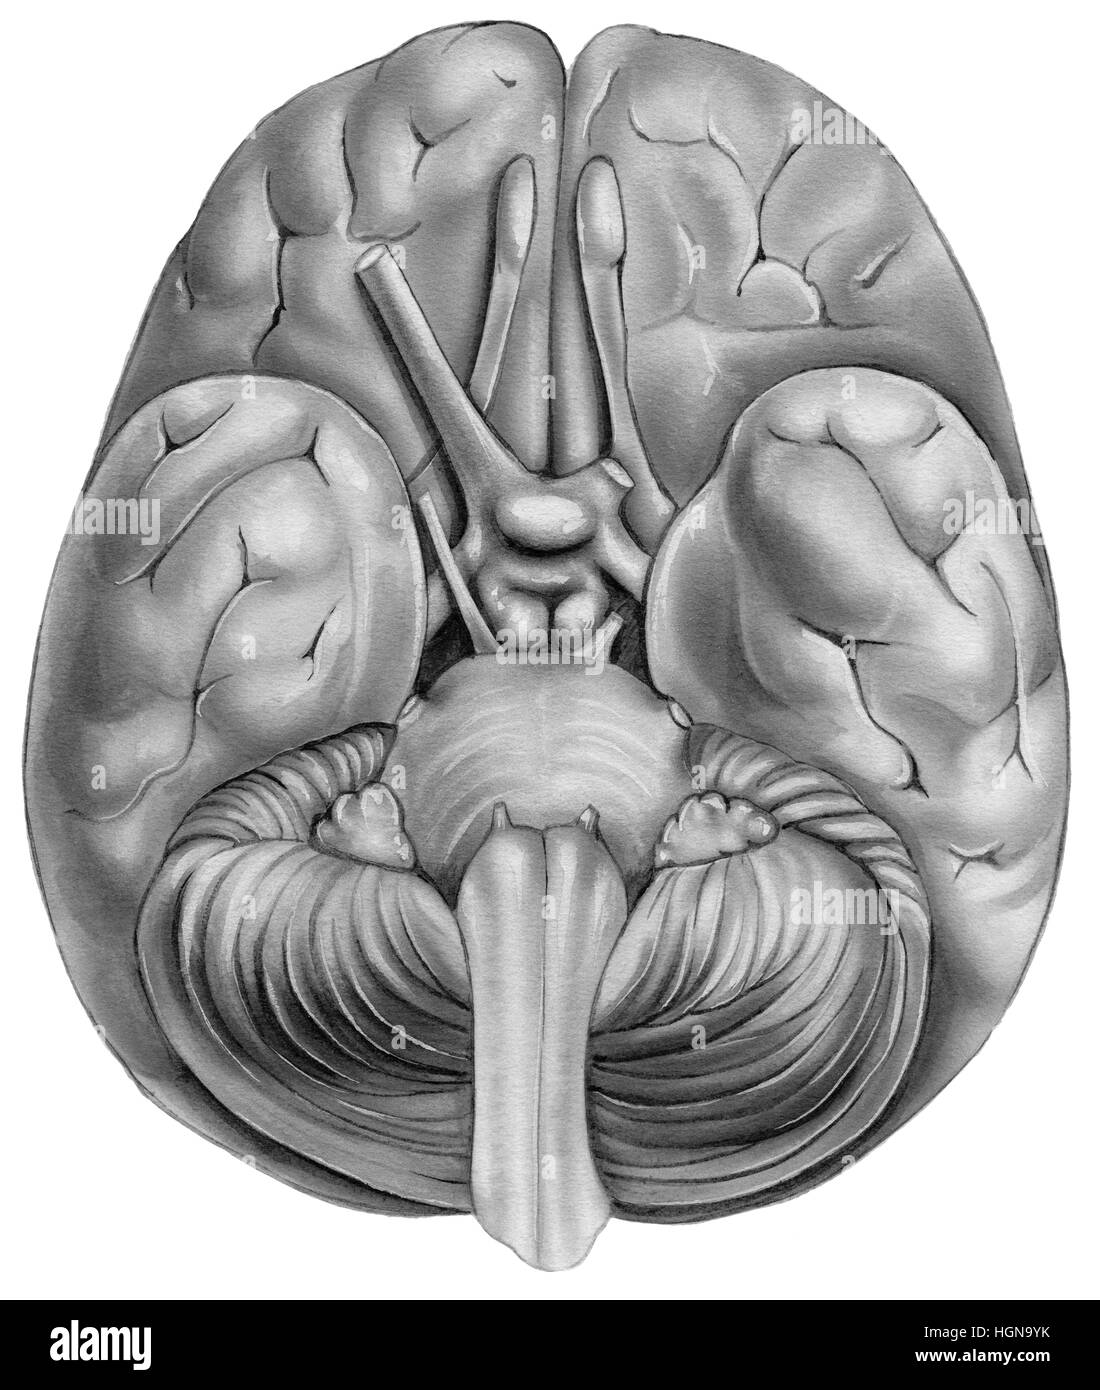 Menschliche Gehirn - Ansicht von unten. Dargestellt sind die Temporallappen, Riechkolben, Stirnlappen, Pons, Medulla Region, Kleinhirn, Pyramide, Chiasma, Sehnerv, olfacto Stockfoto